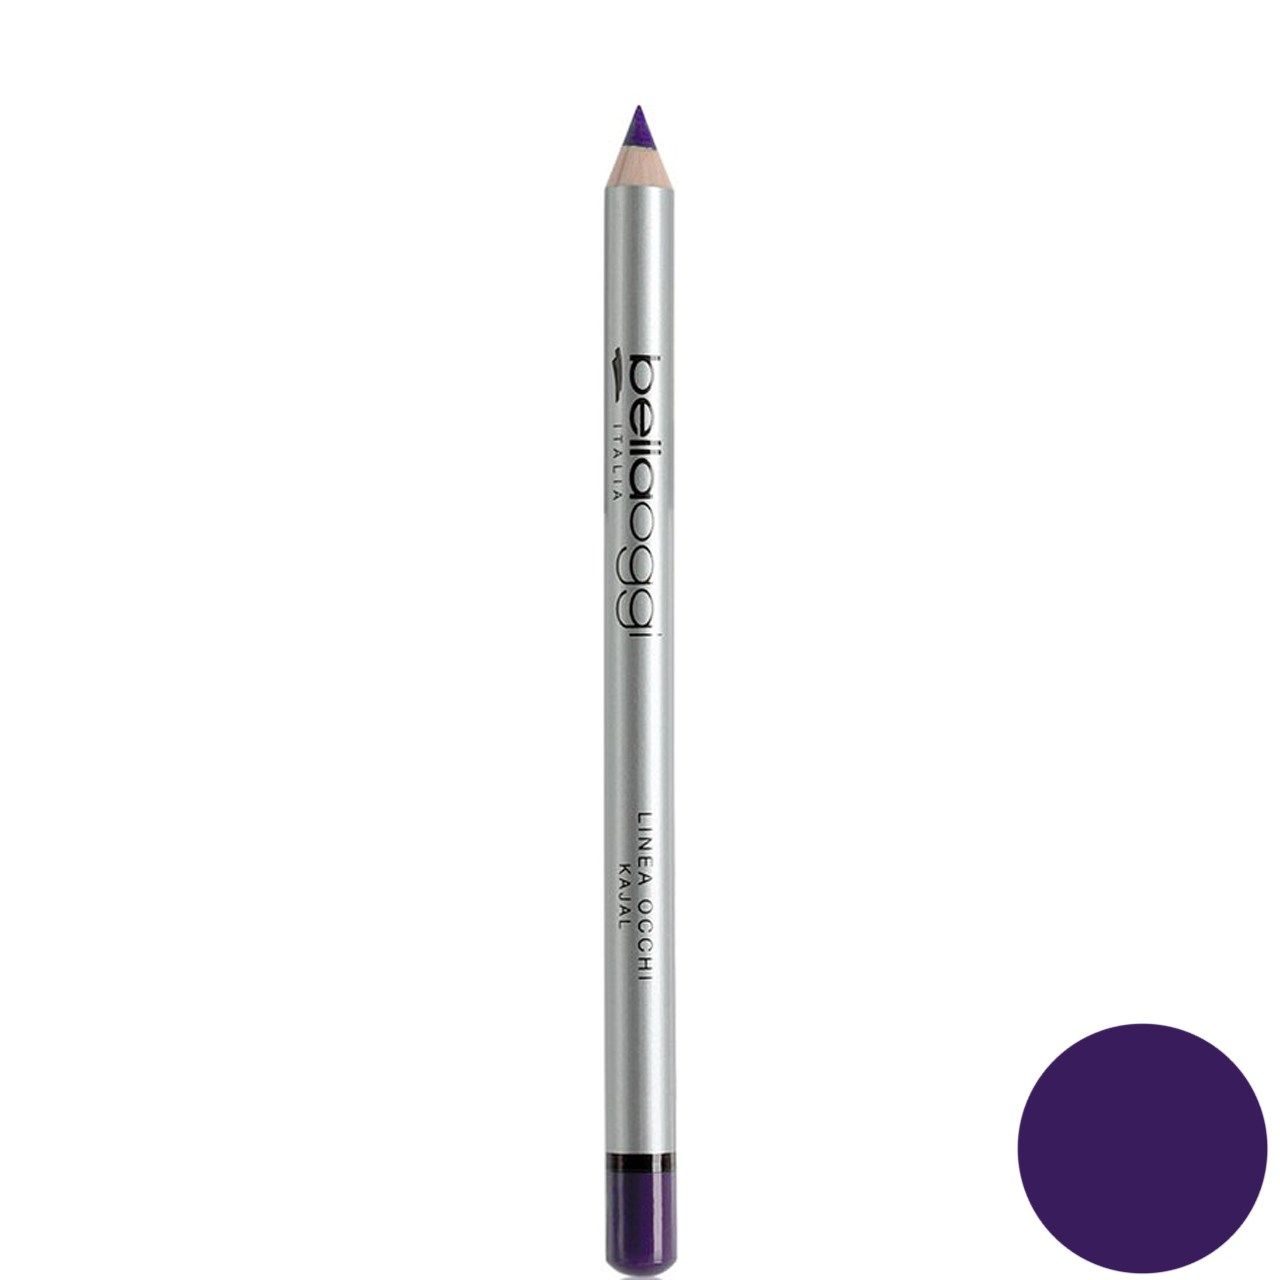 مداد چشم بلاوجی مدل LINEA OCCHI KAJAL شماره violet kajal 106 -  - 1